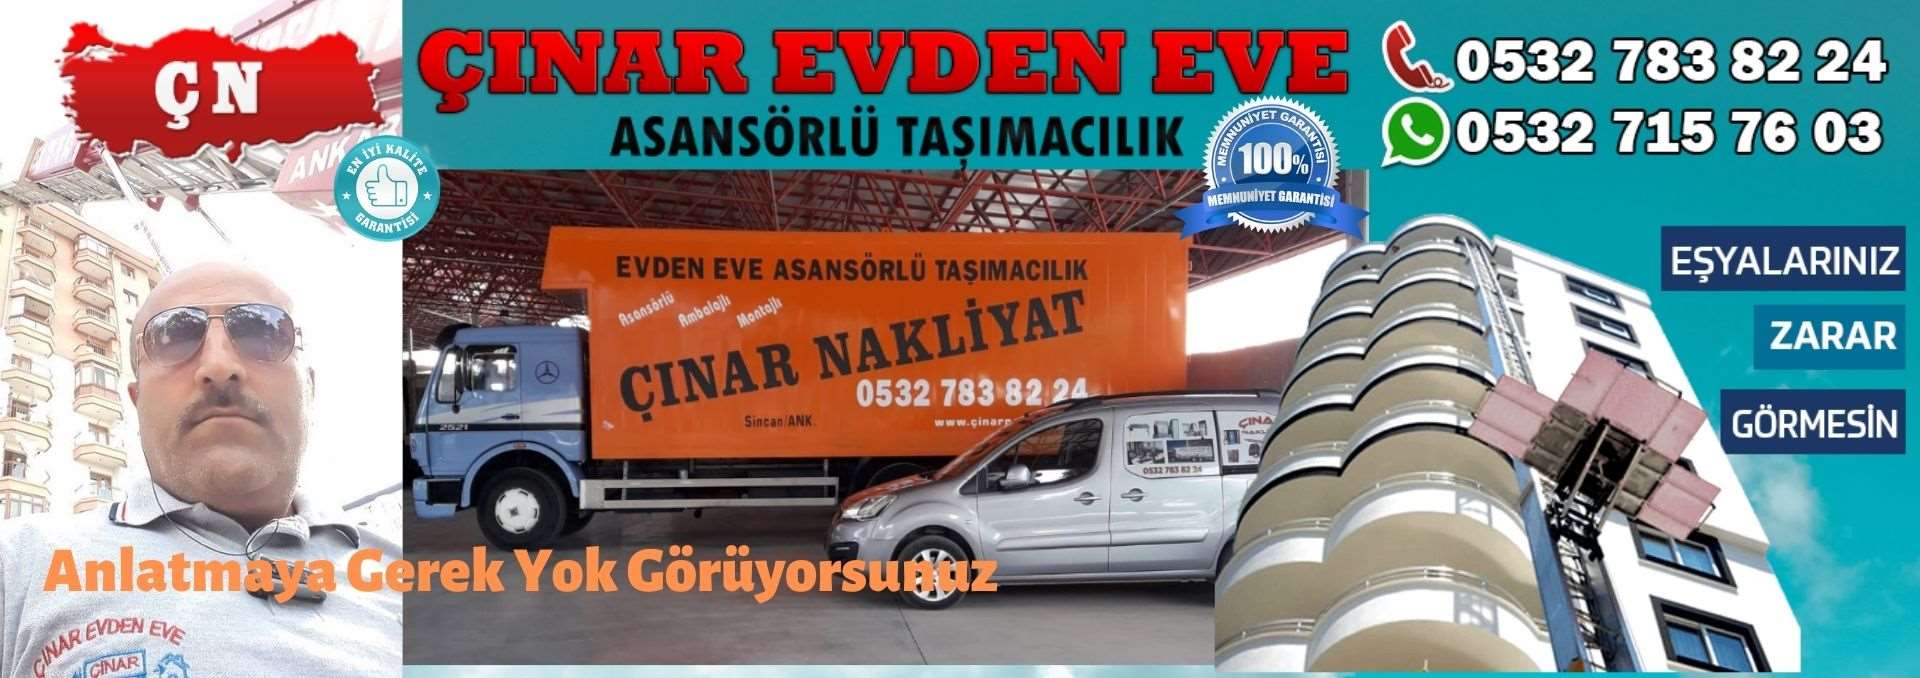 Ankara Gölbaşı / Ankara Evden Eve Asansörlü Ev Eşyası Taşıma 0532 715 76 03